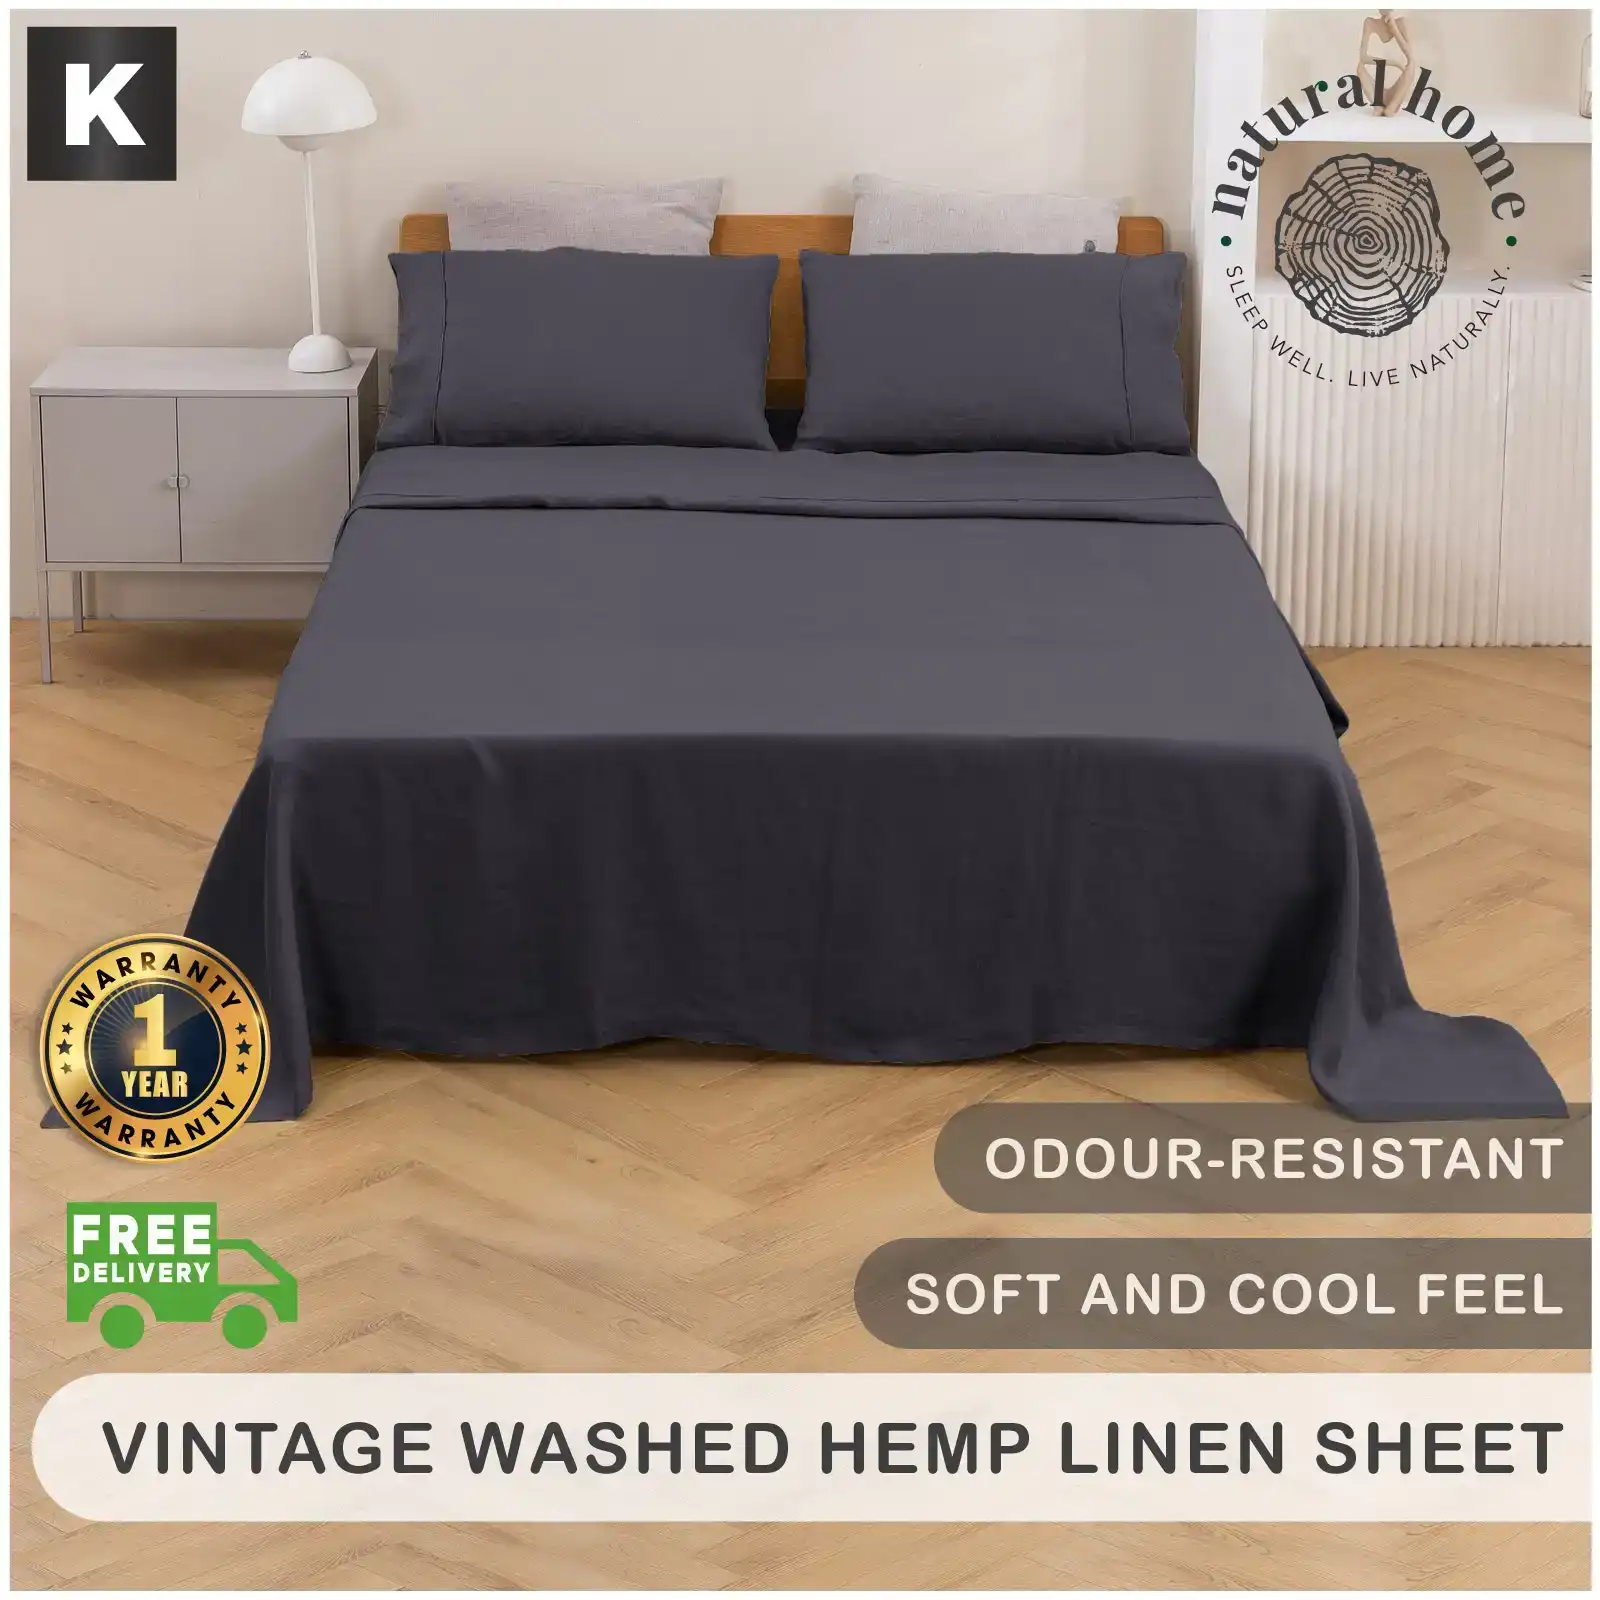 Natural Home Vintage Washed Hemp Linen Sheet Set Charcoal King Bed